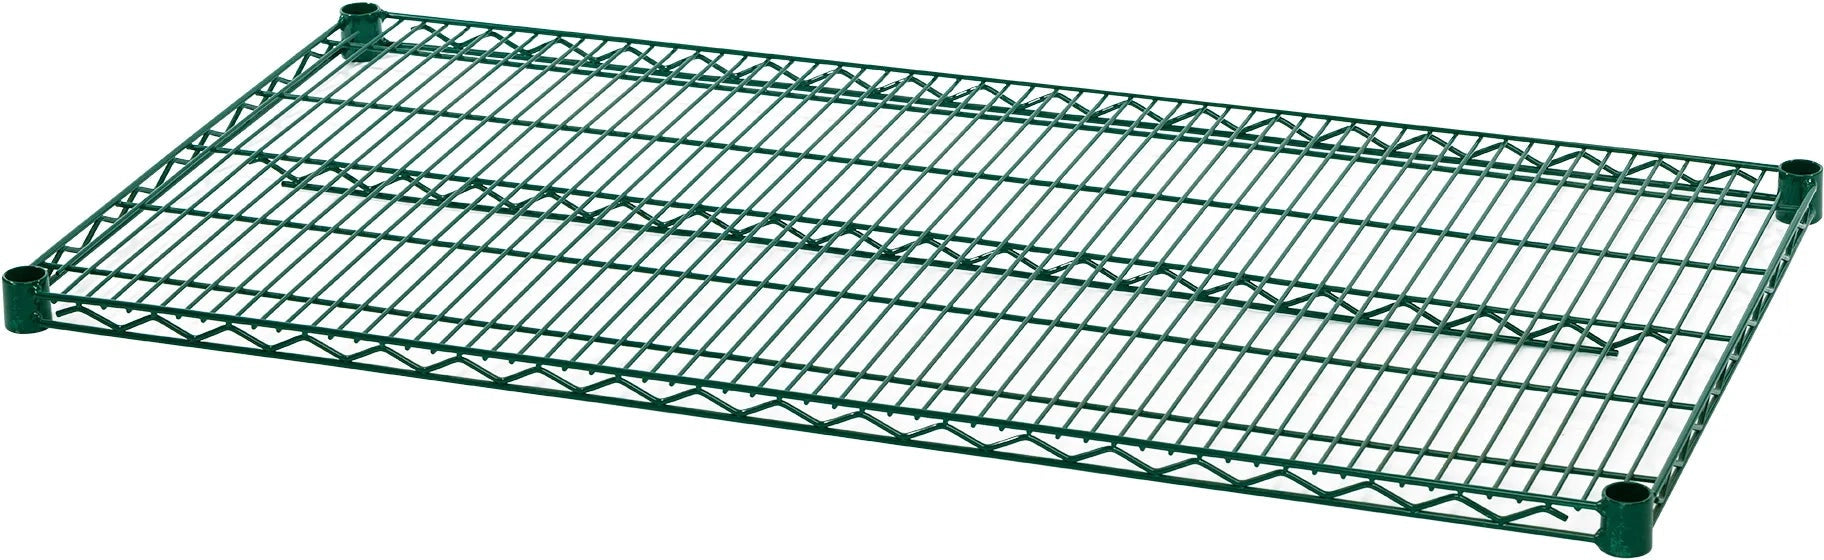 Julien - Rosko 30" x 14" Shelf for Wire Shelving, Green Epoxy - RO-WS-S3014-GE